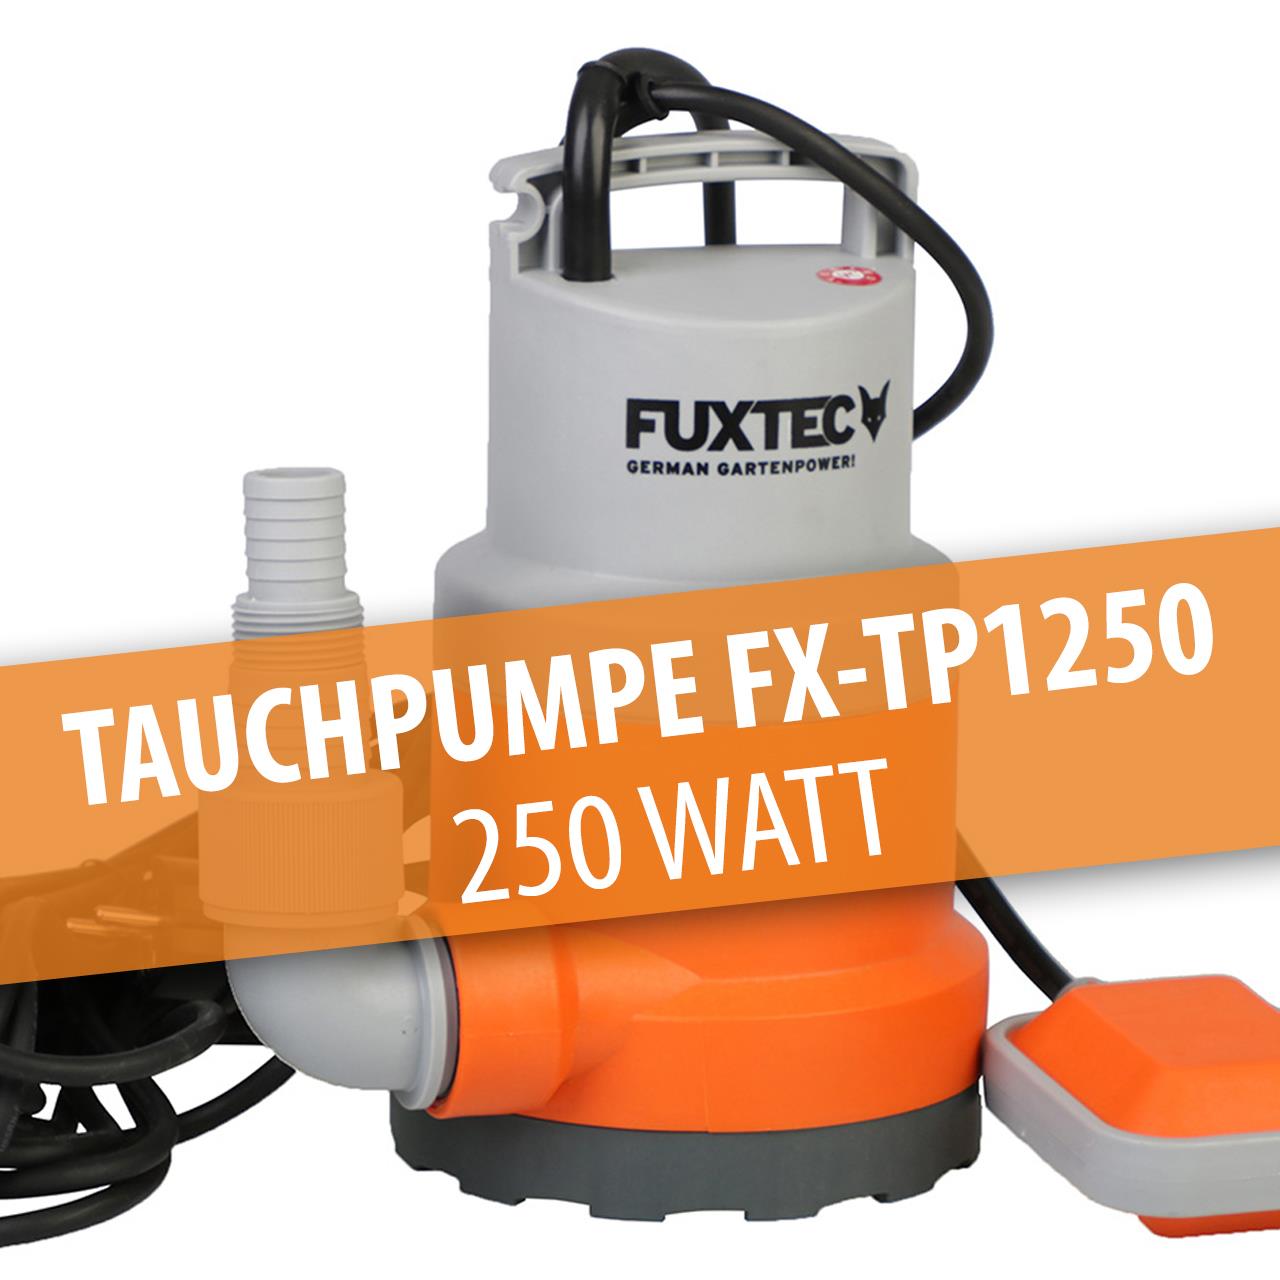 B-Ware FUXTEC Tauchpumpe FX-TP1250 - 250 Watt